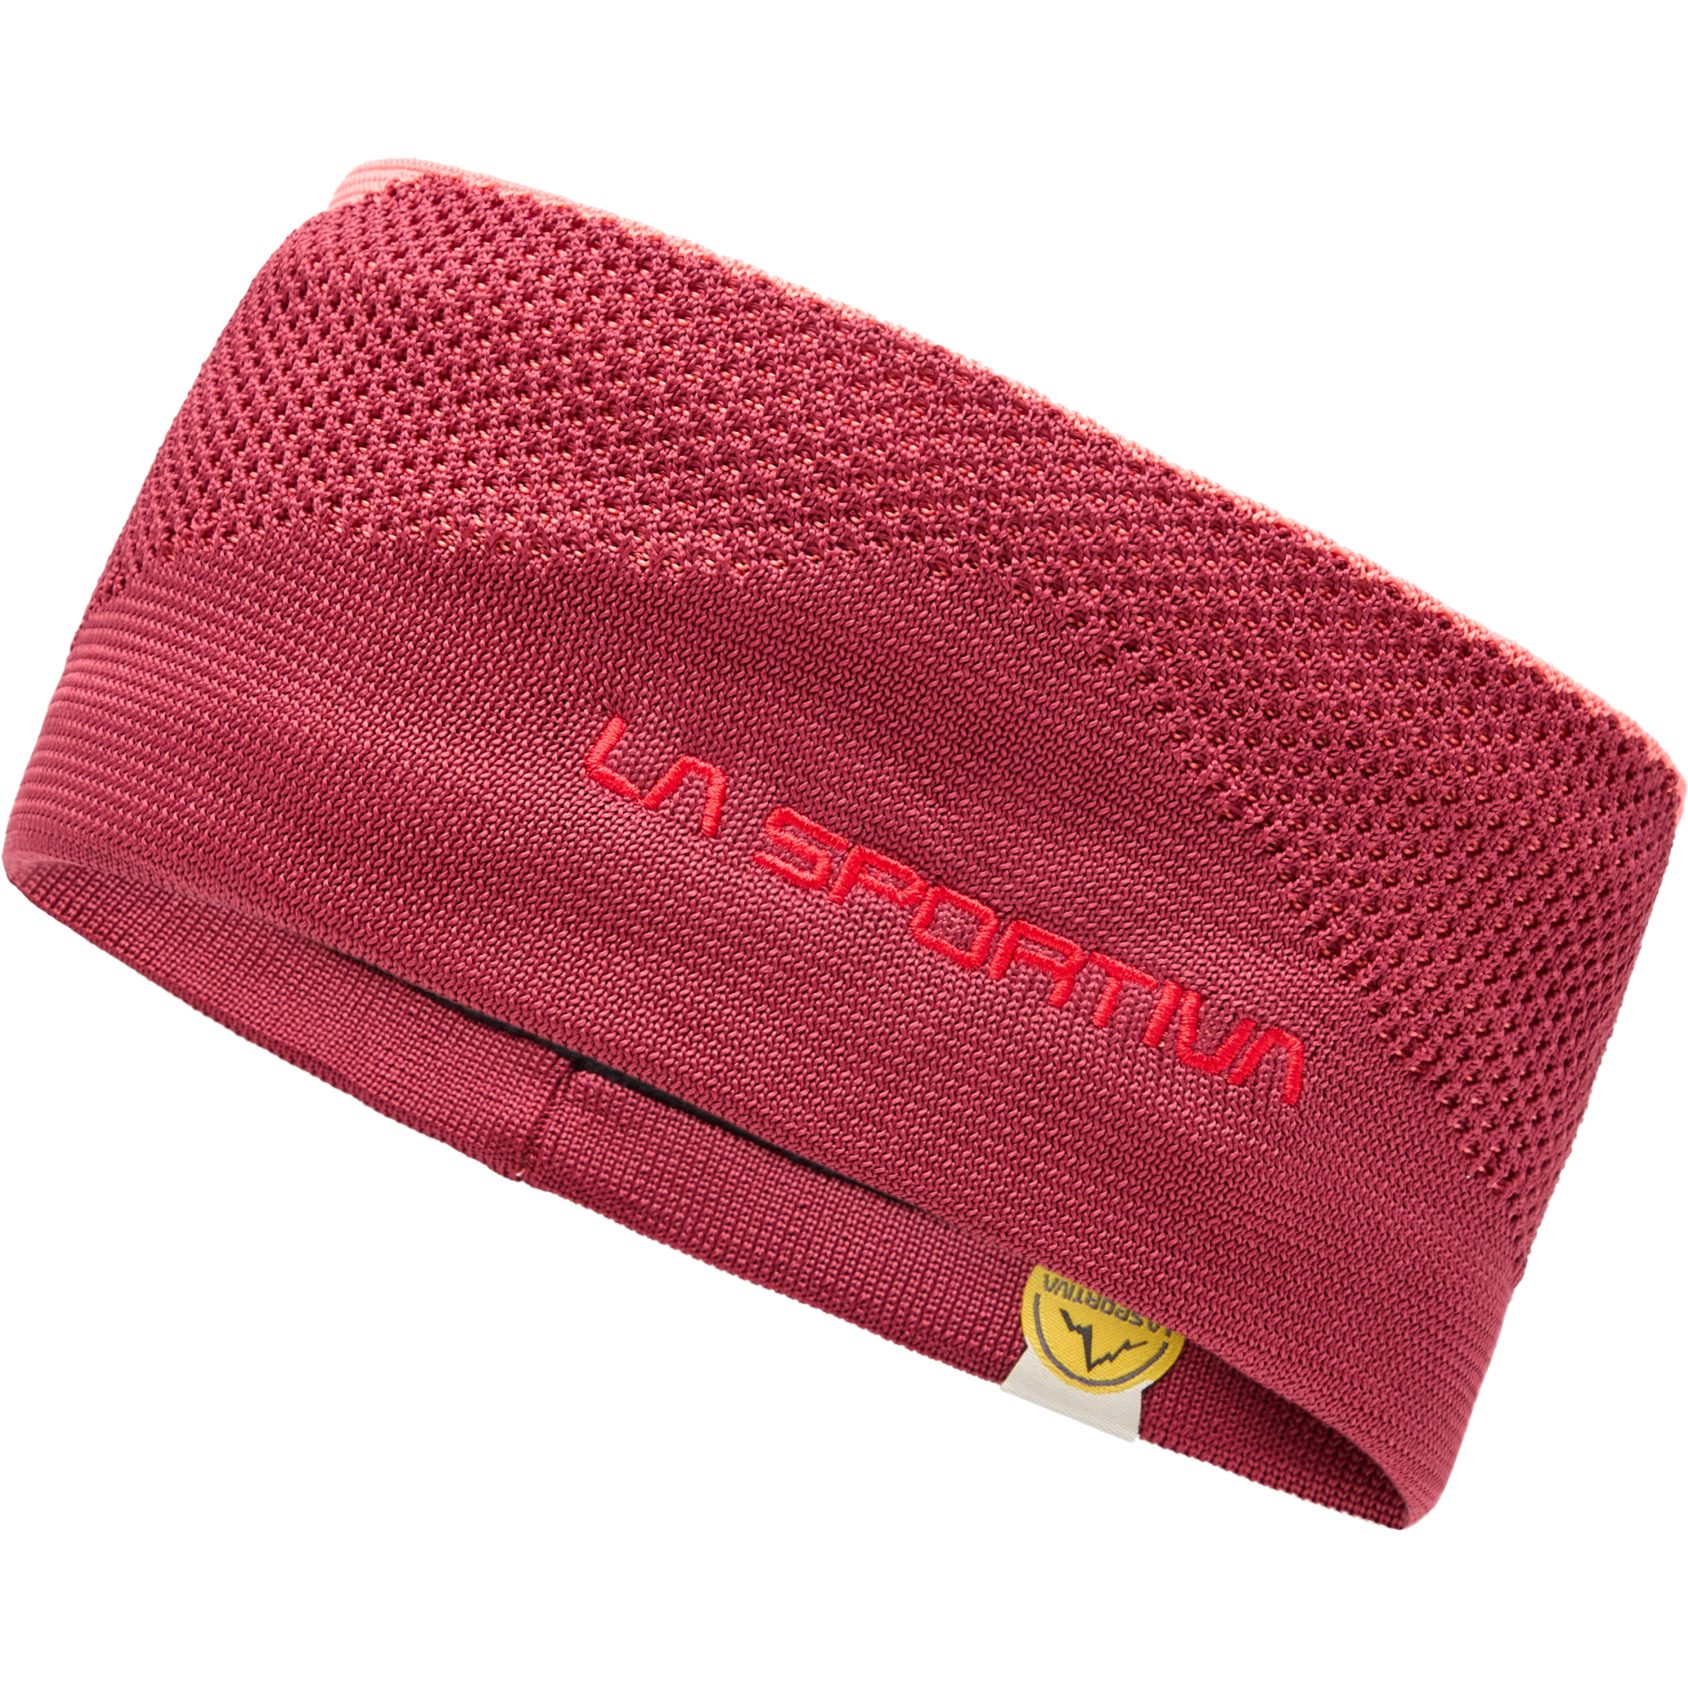 Produktbild von La Sportiva Knitty Stirnband - Velvet/Flamingo